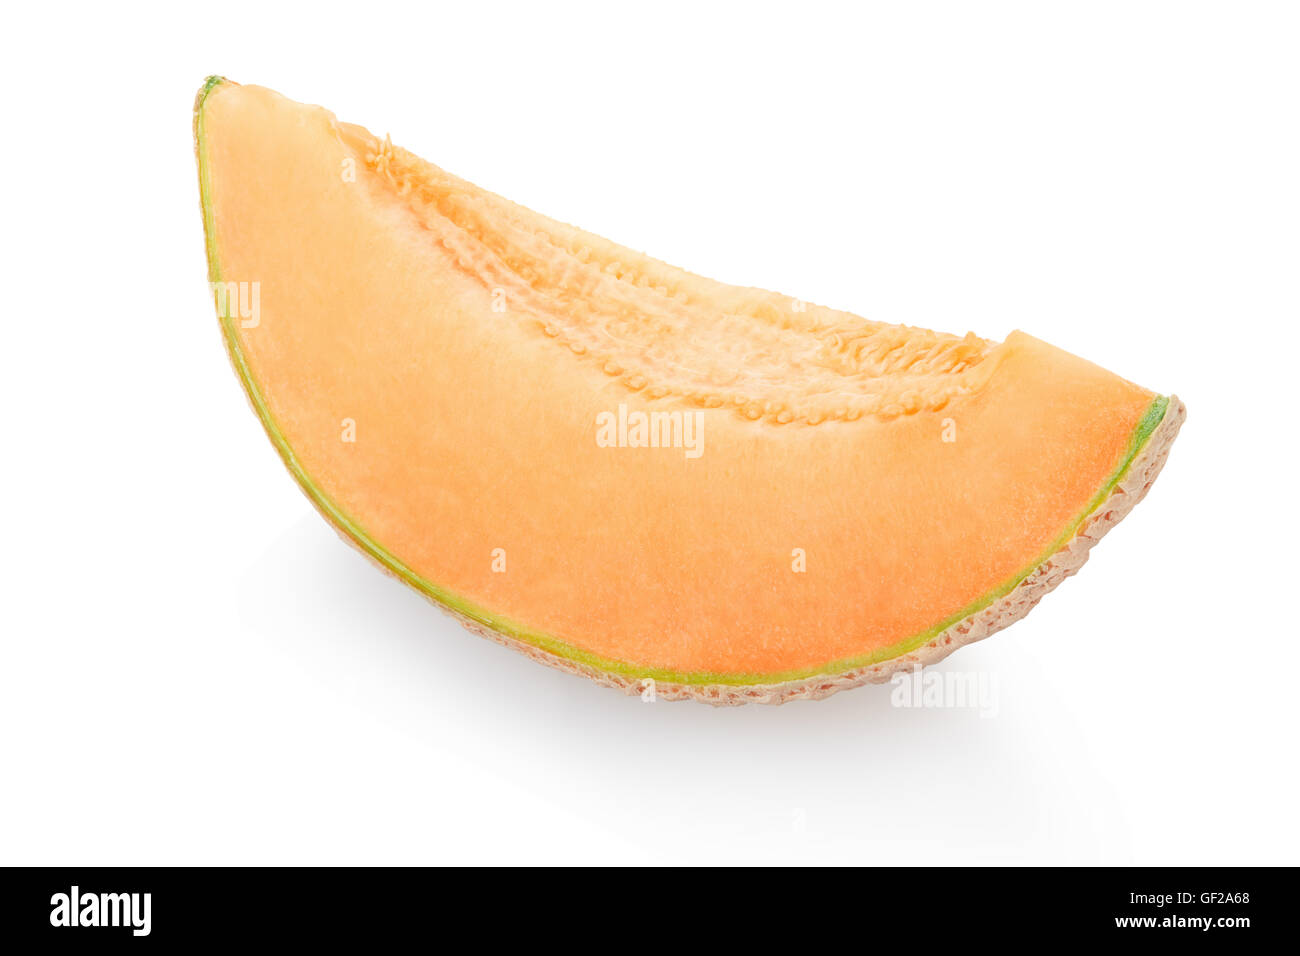 Cantaloupe melon slice isolated on white Stock Photo